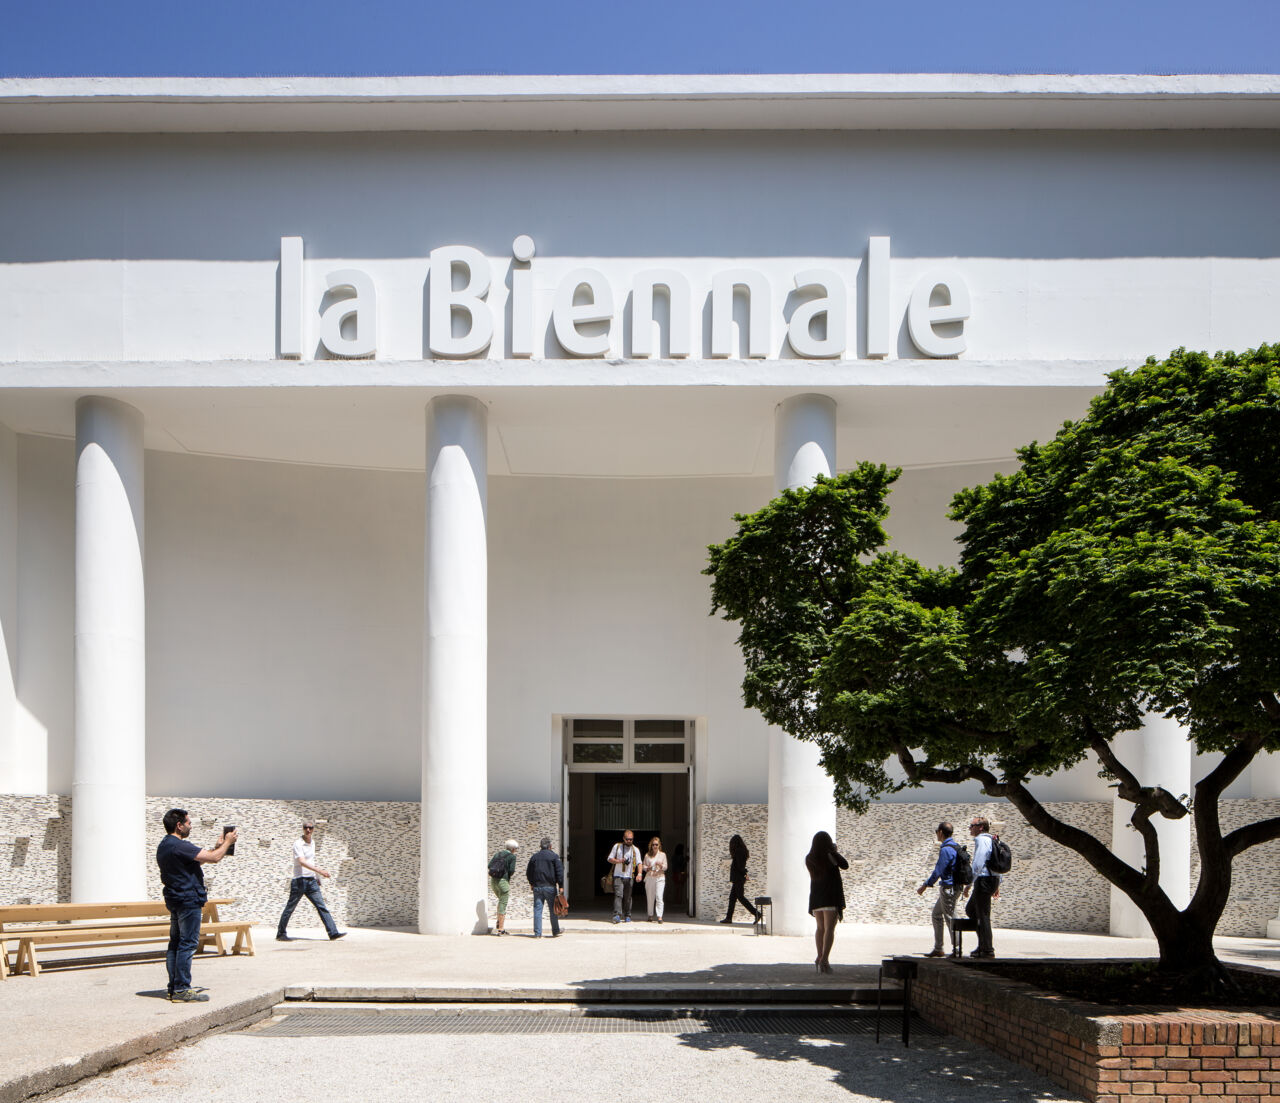 Biennale Venedig 2023 11 Highlights von der Architekturbiennale